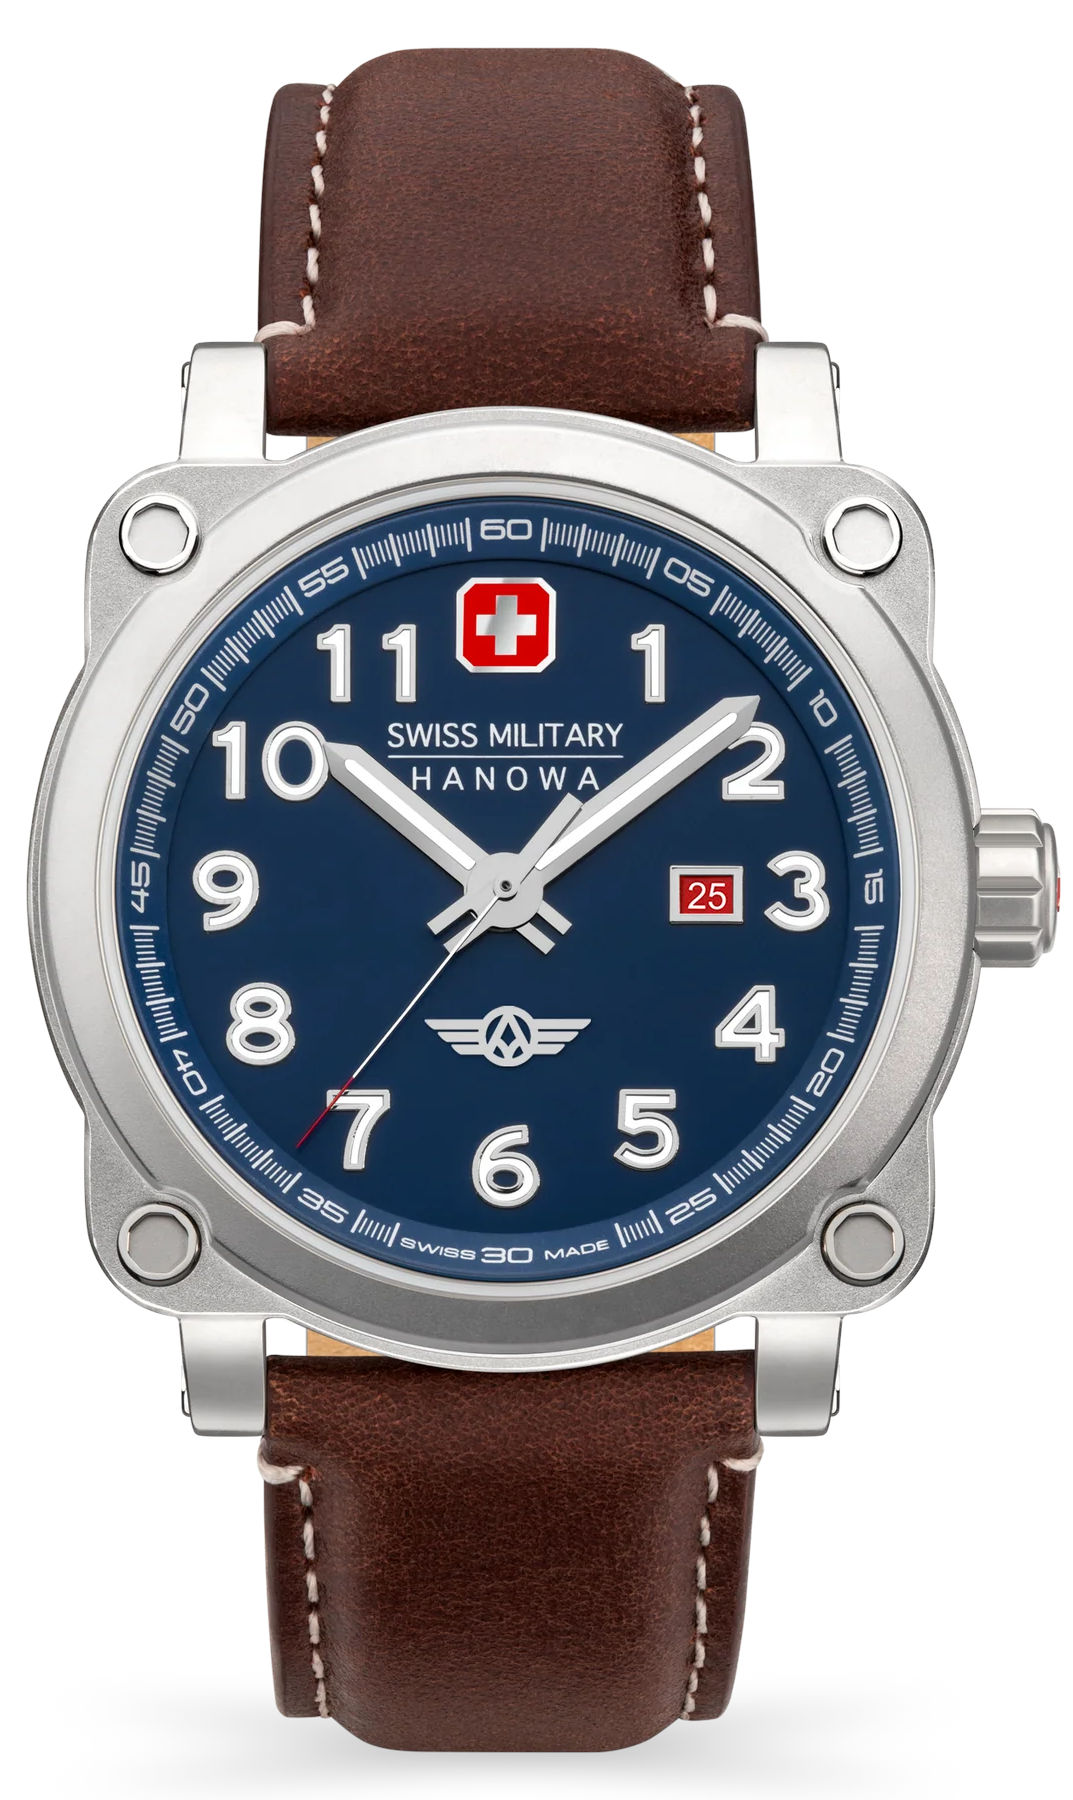  Swiss Military Hanowa SMWGB2101301